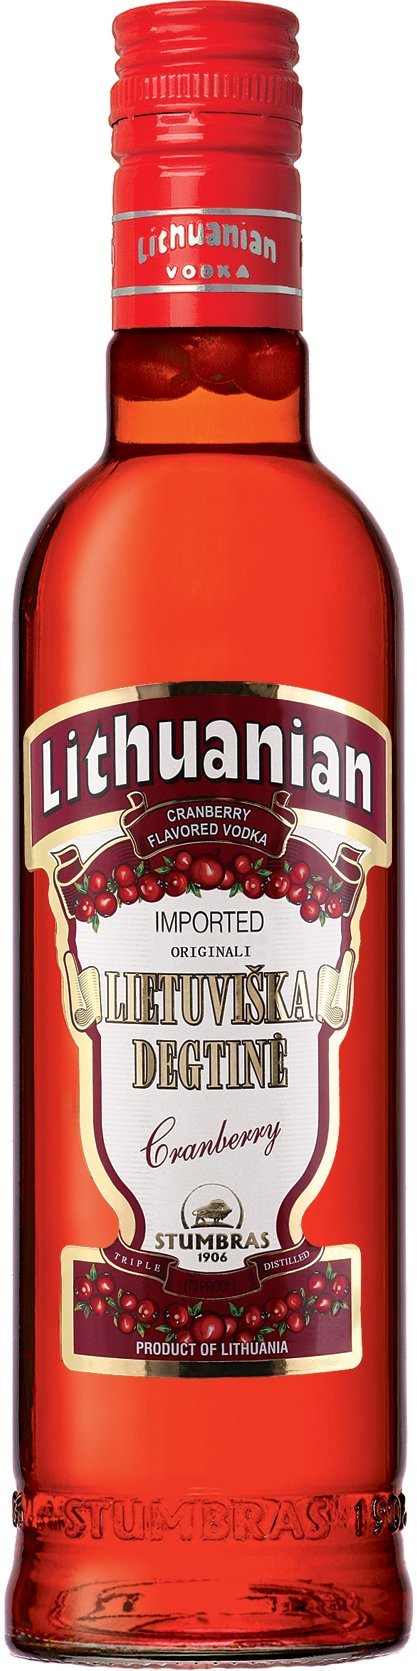 Lithuanian Cranberry Vodka